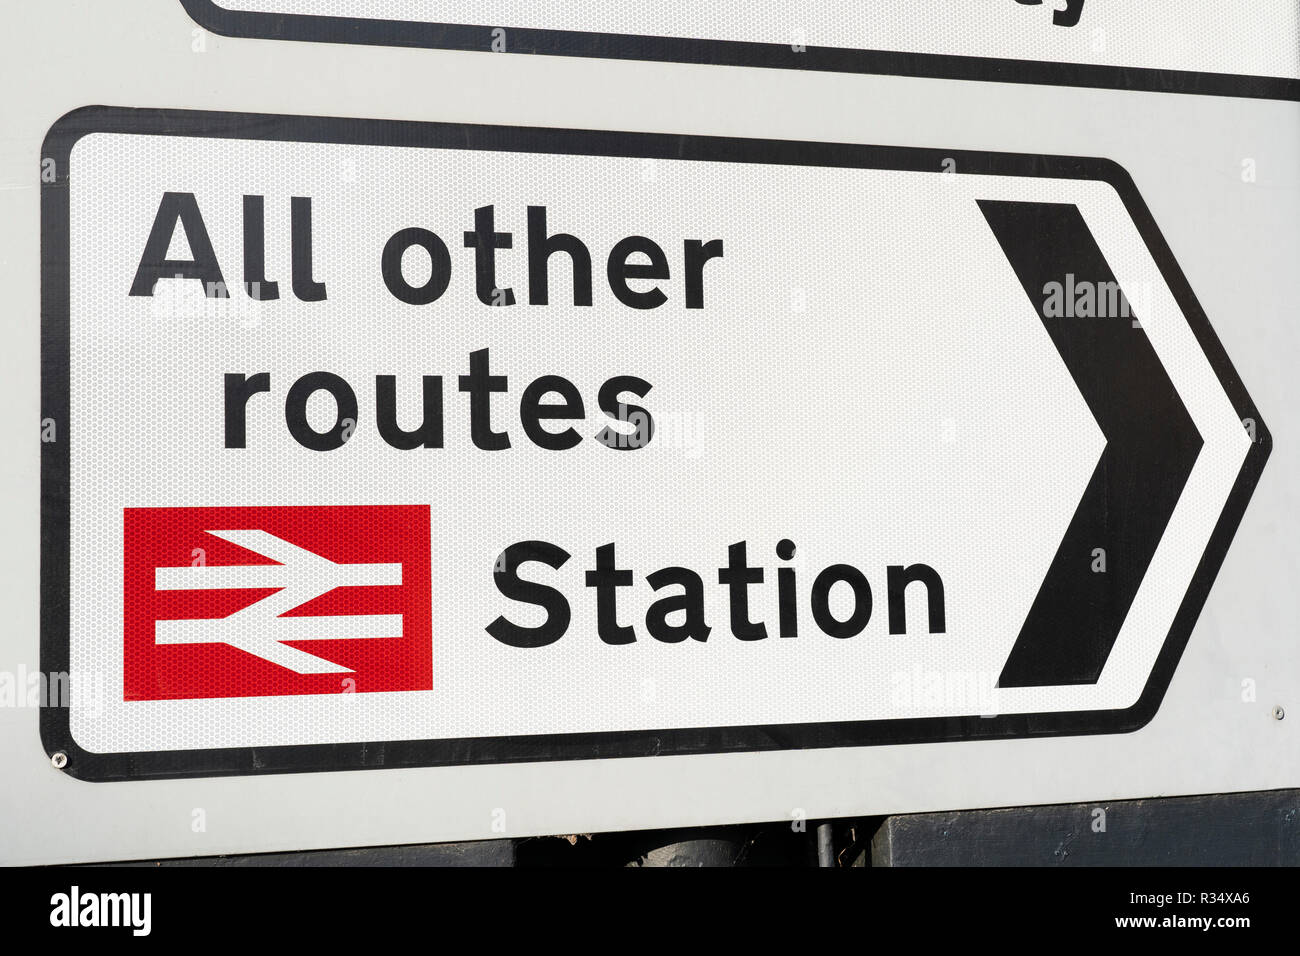 Ein Klasse 2 (hohe Intensität) retroflective Road Sign in England mit Wegbeschreibung zu einem Bahnhof und alle anderen Routen Stockfoto